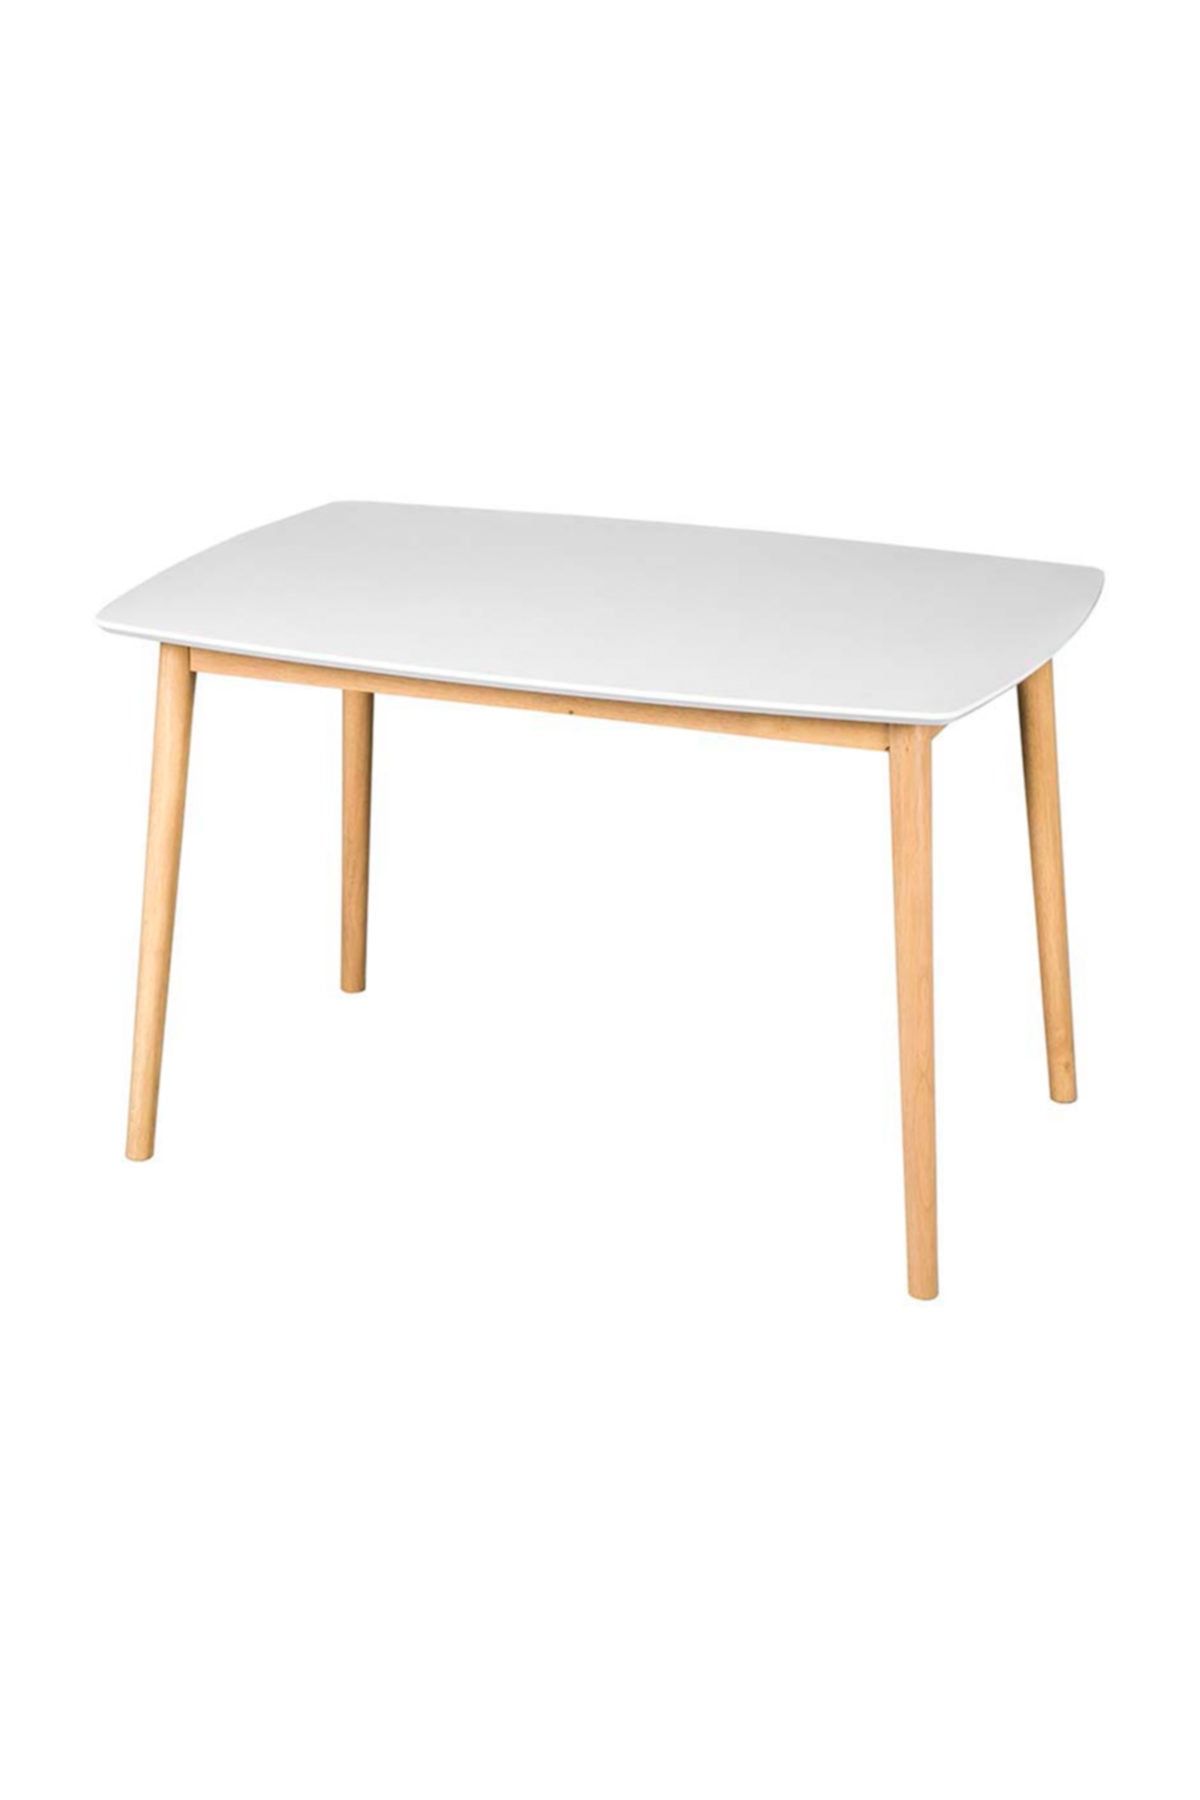 Sandalye Online Eames Mutfak Masası Beyaz 140x80cm.